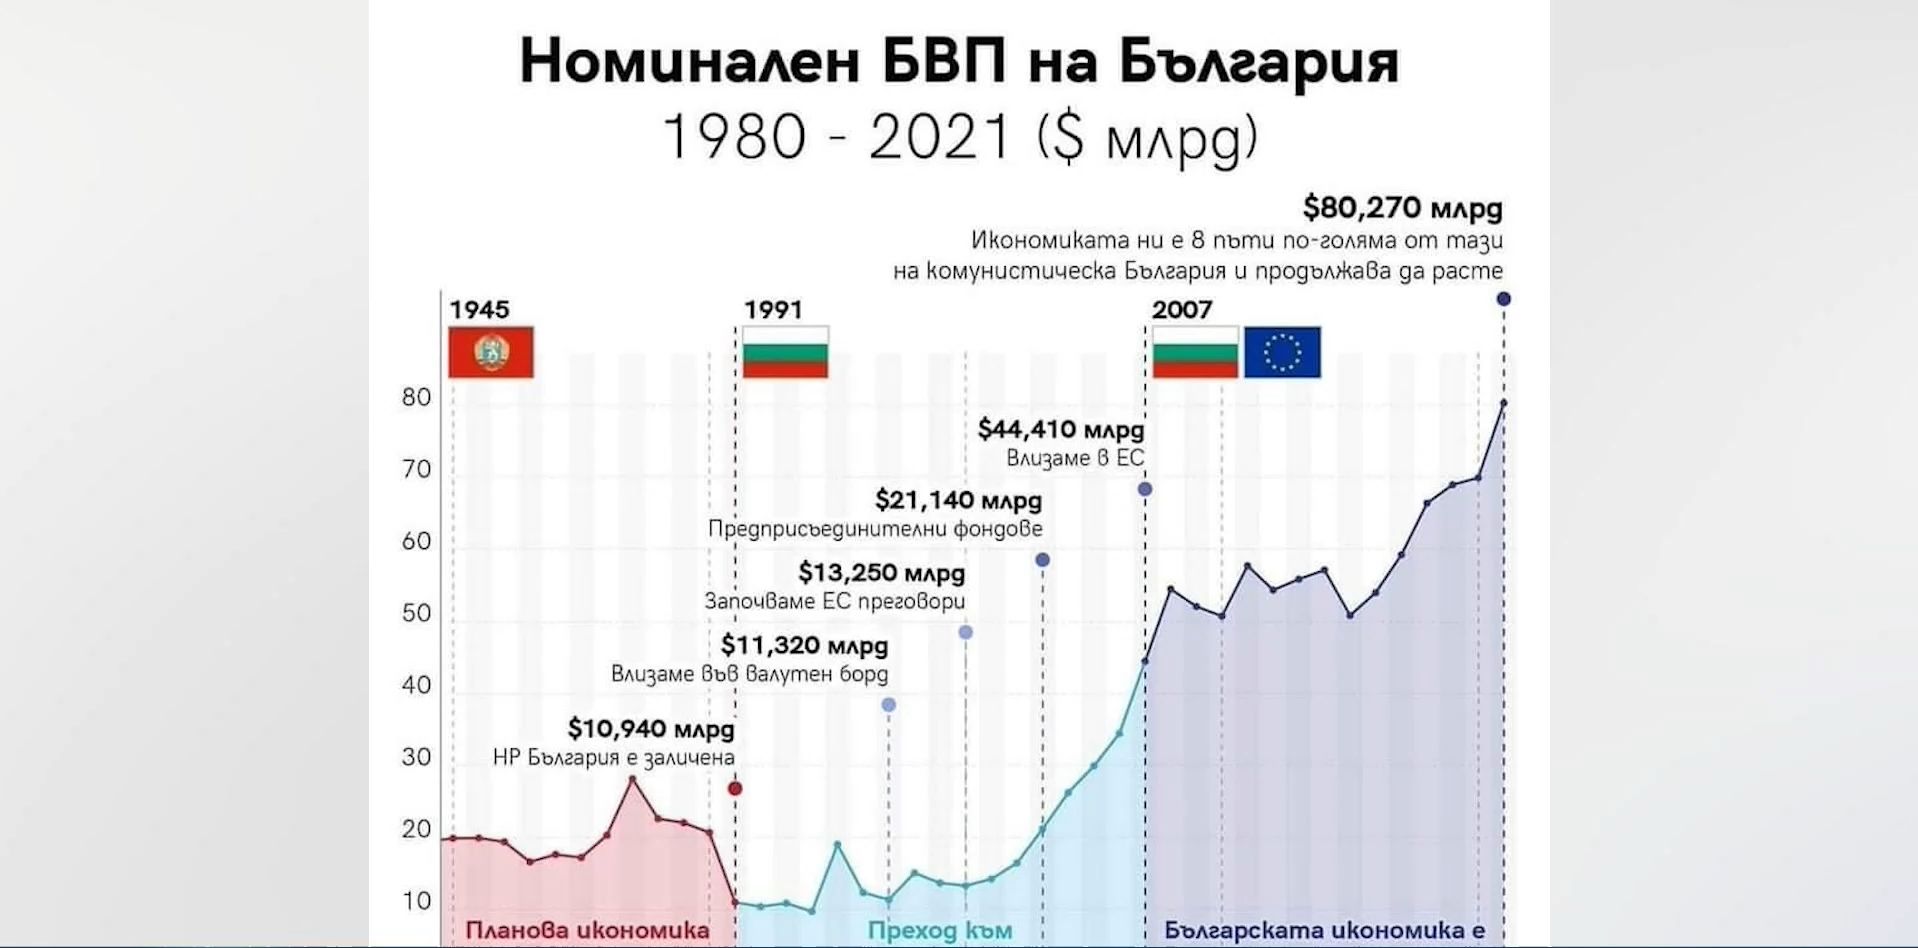 Икономиката на България не е нараснала осем пъти но без